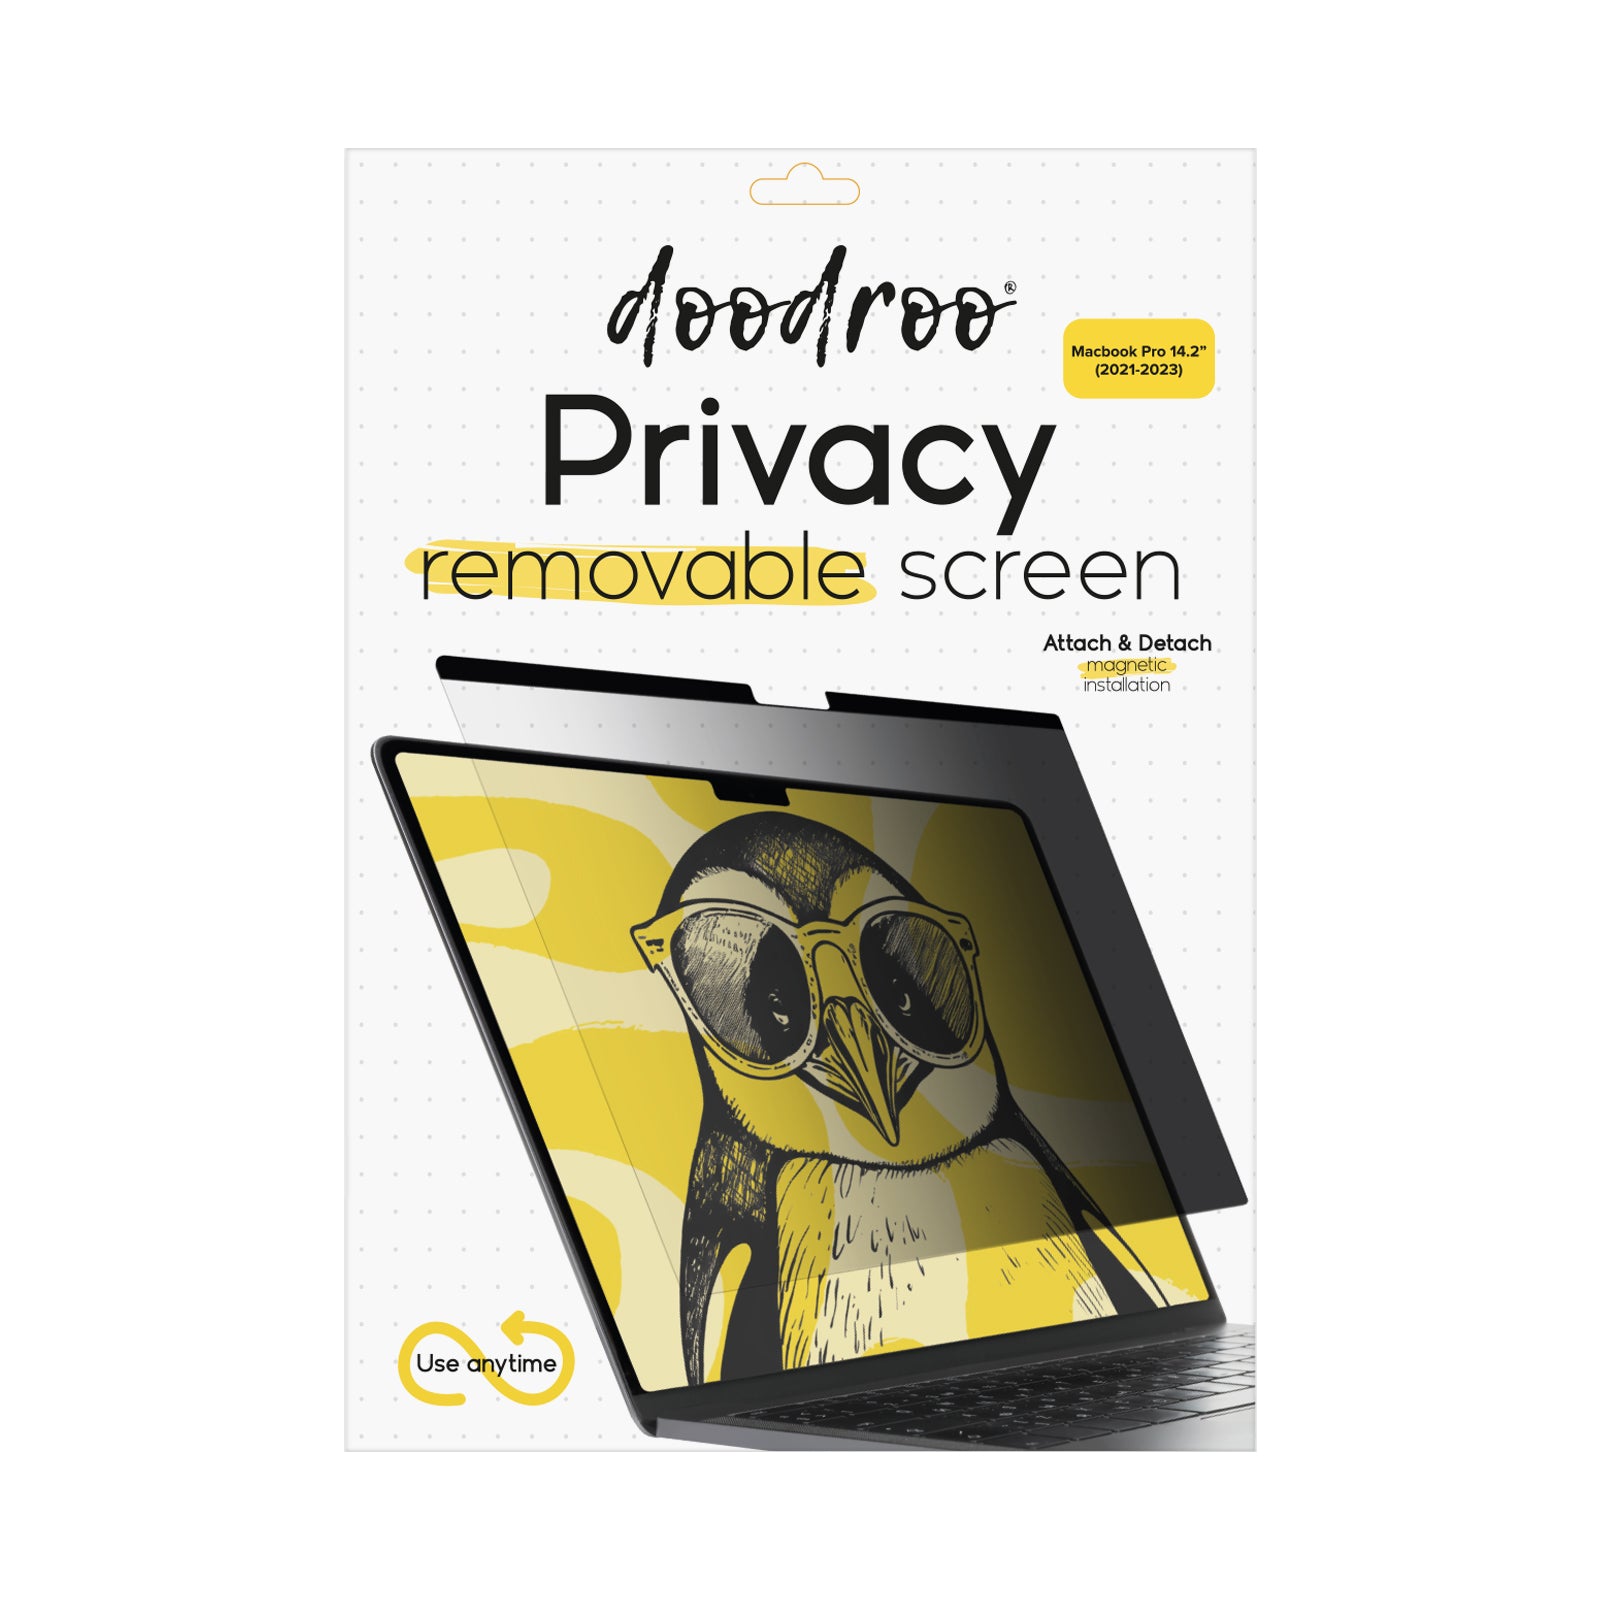 Protector de pantalla extraíble con efecto privacidad para MacBook Pro 14.2" (2021-2023)